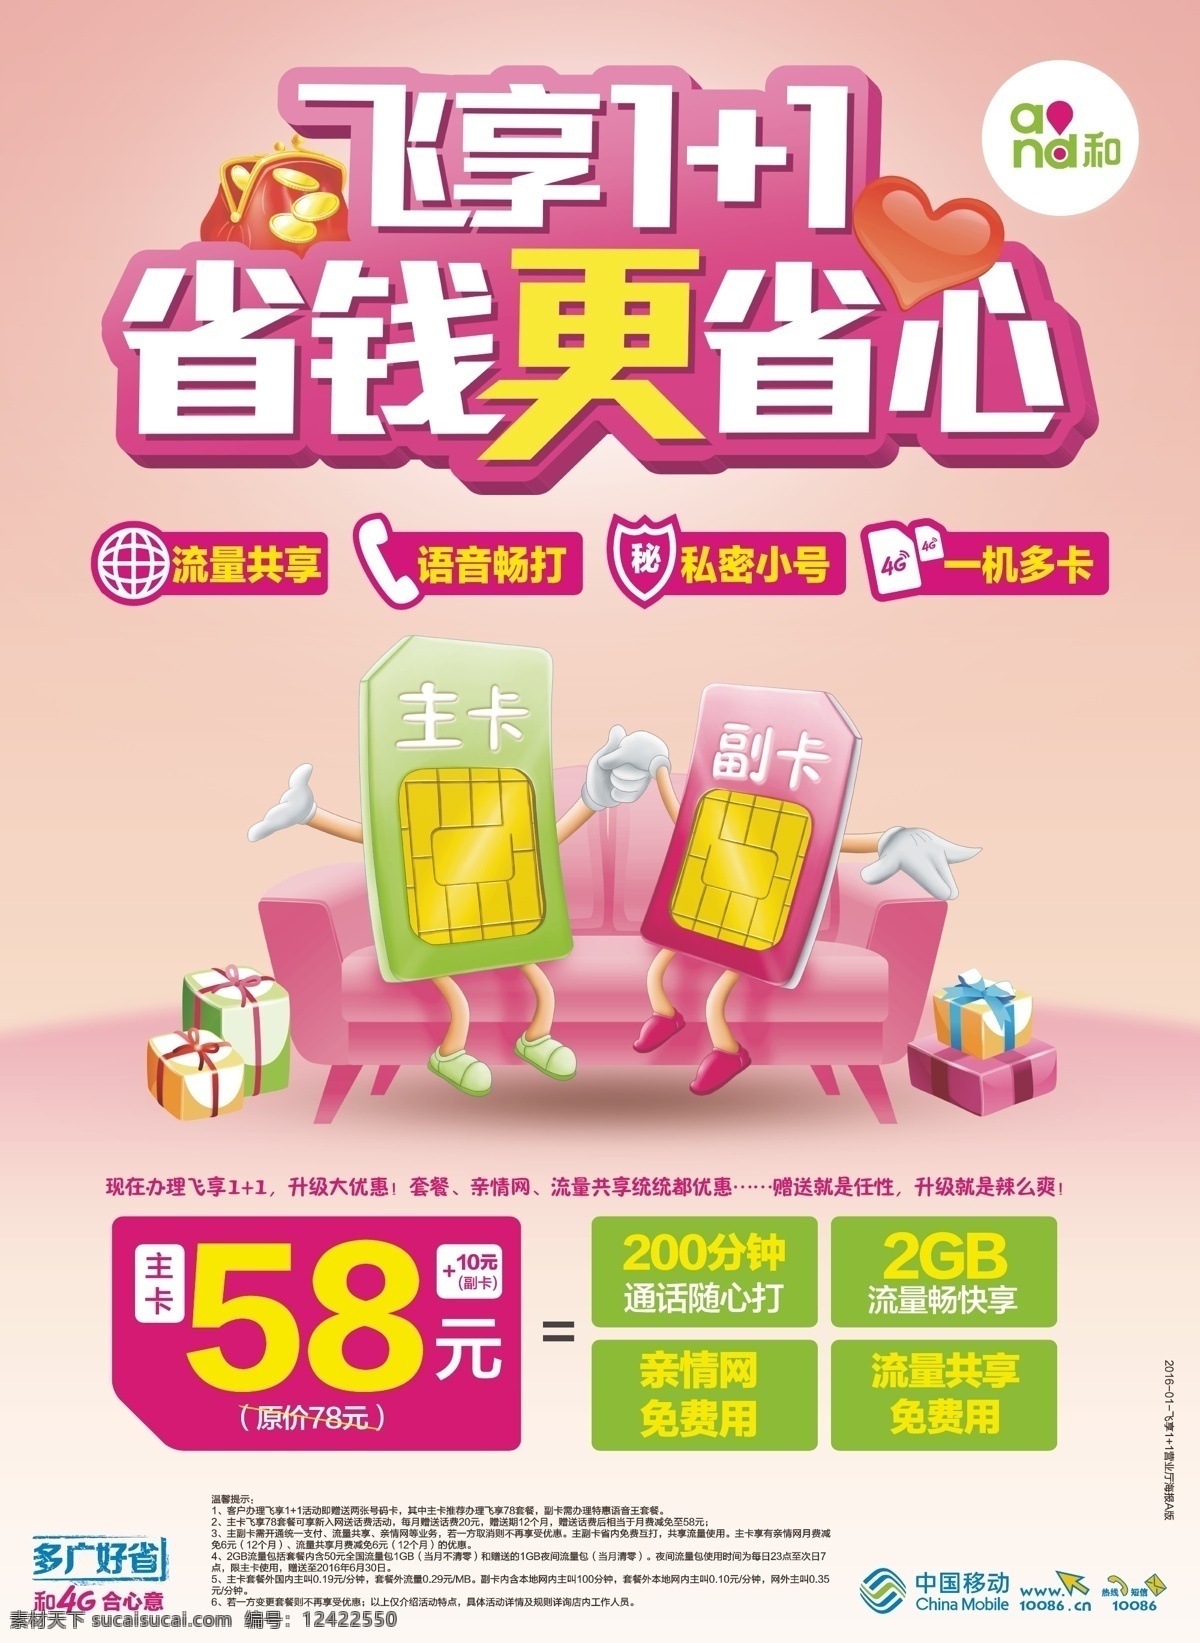 中国移动海报 中国移动 主卡 副卡 电话卡 海报 创意 扁平化设计 卡通